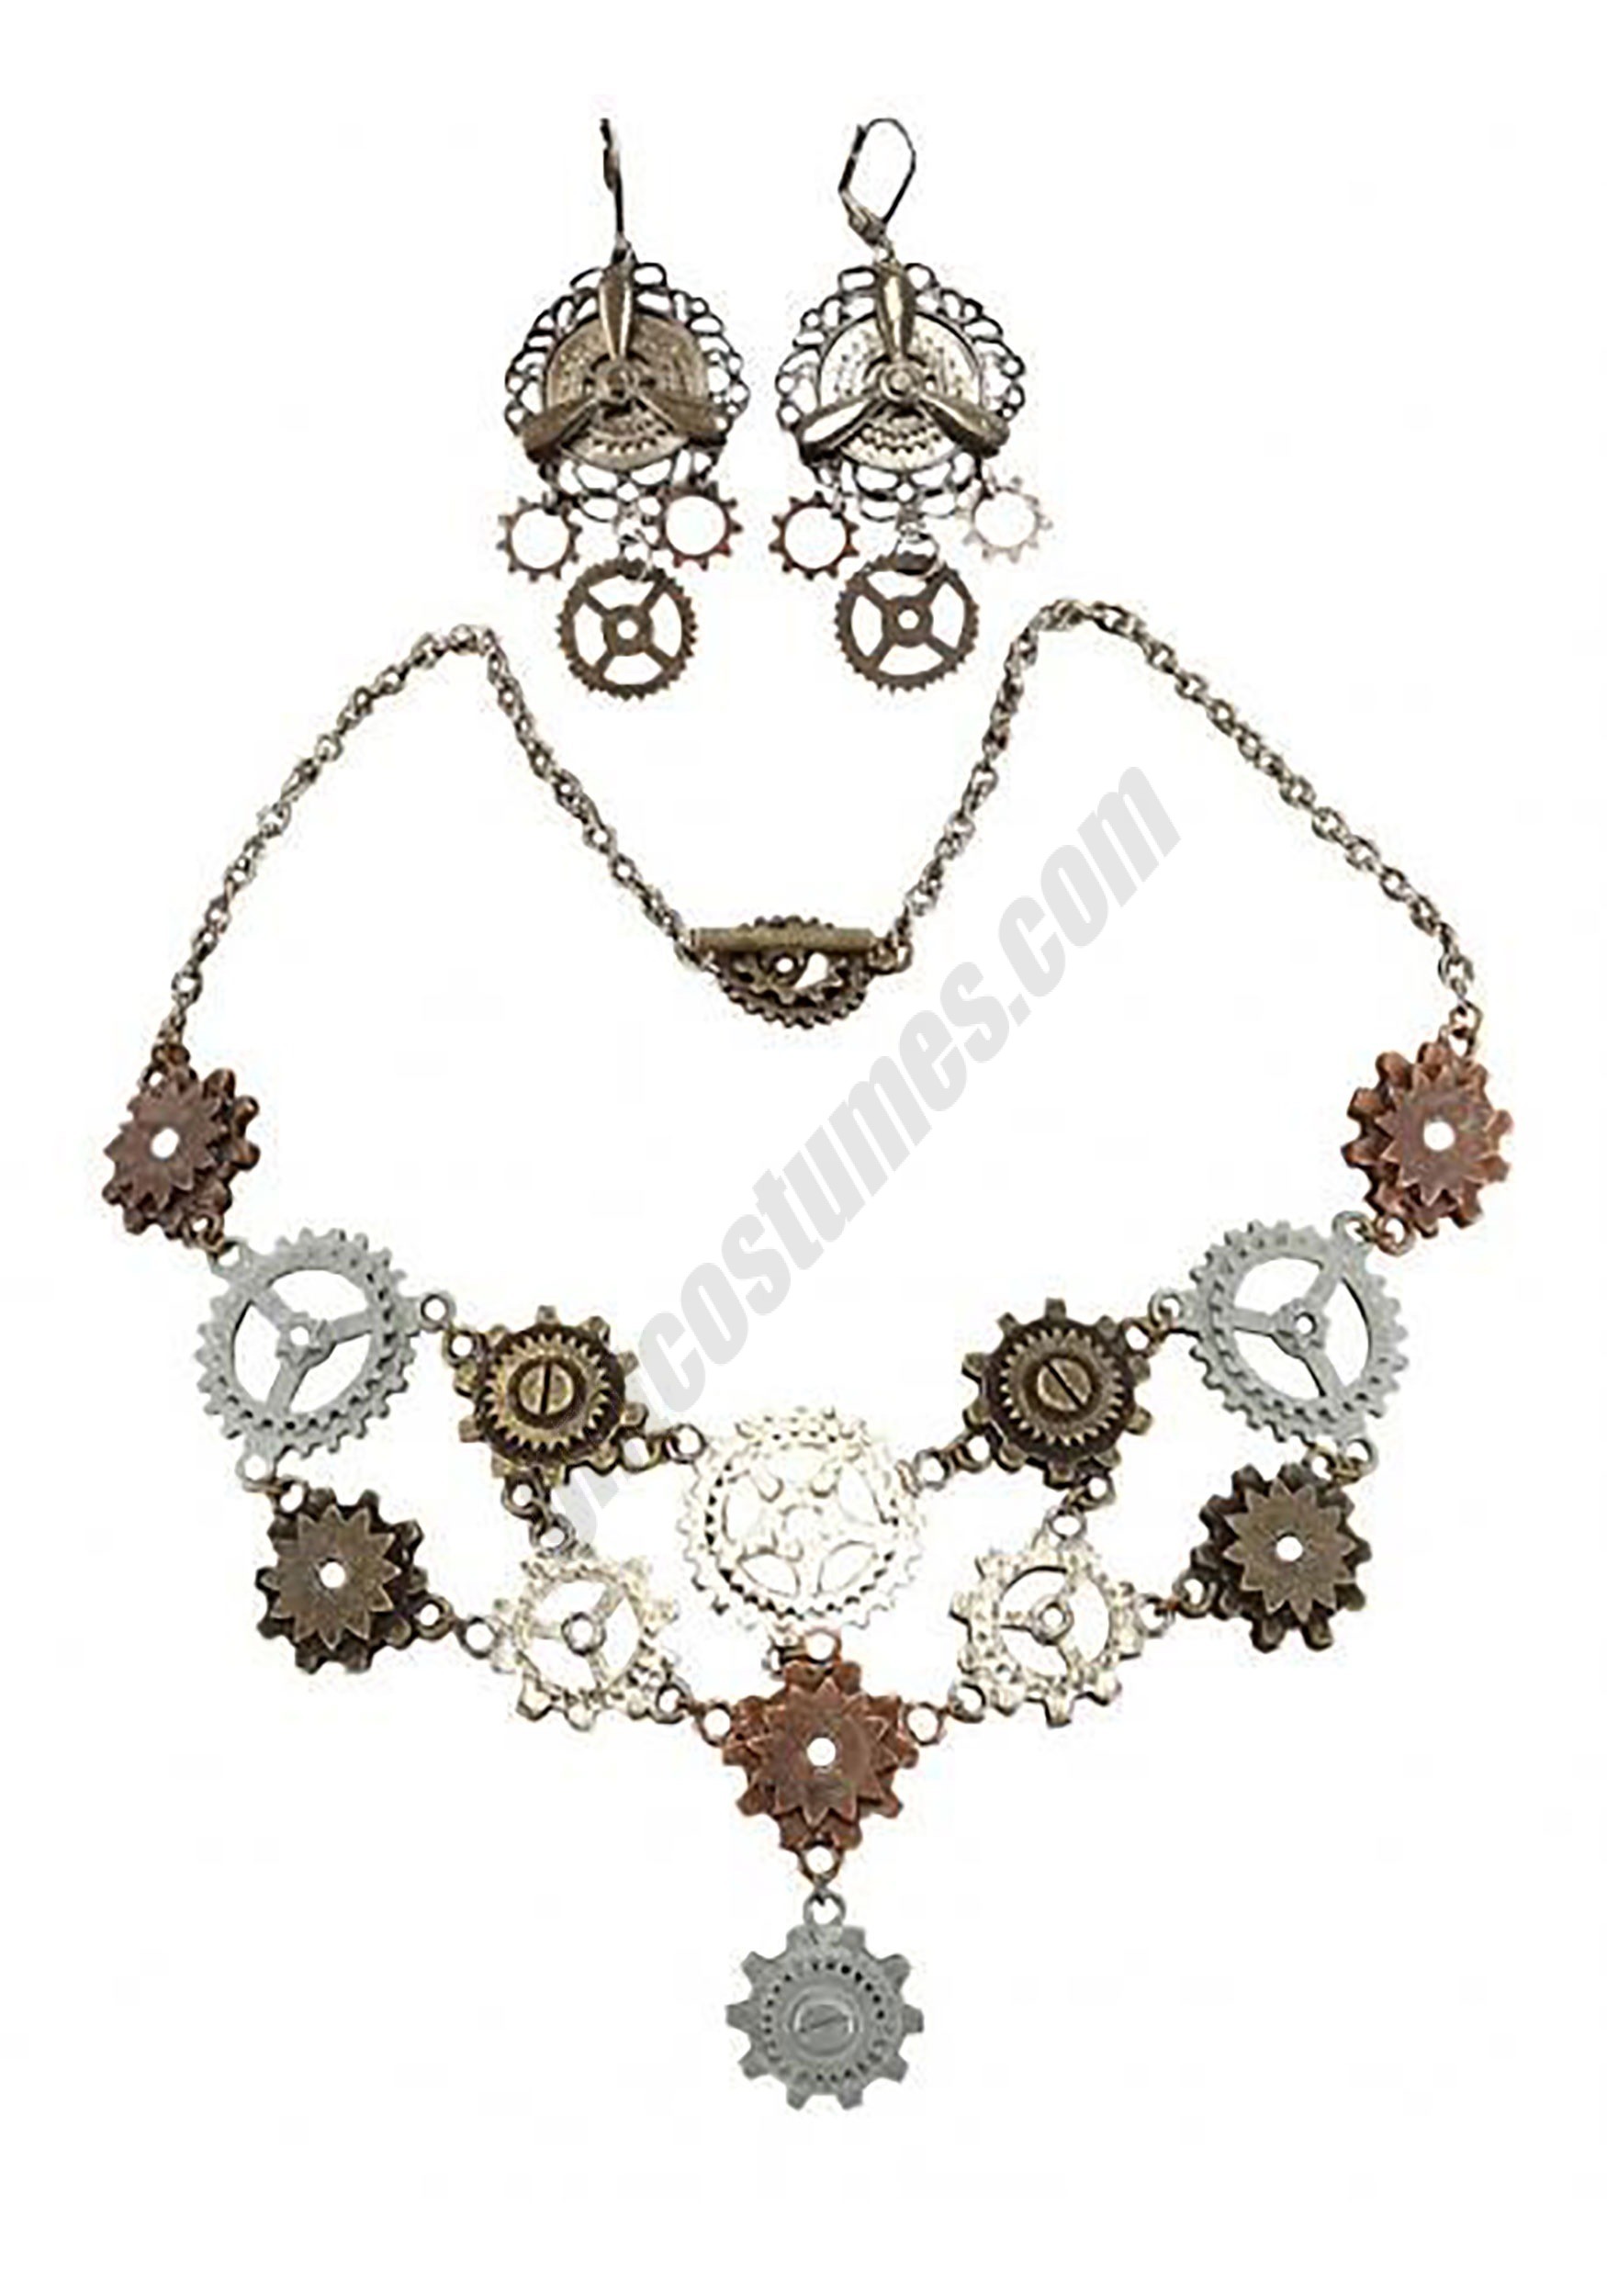 Multi Gear Necklace & Earrings for Adults Promotions - Multi Gear Necklace & Earrings for Adults Promotions